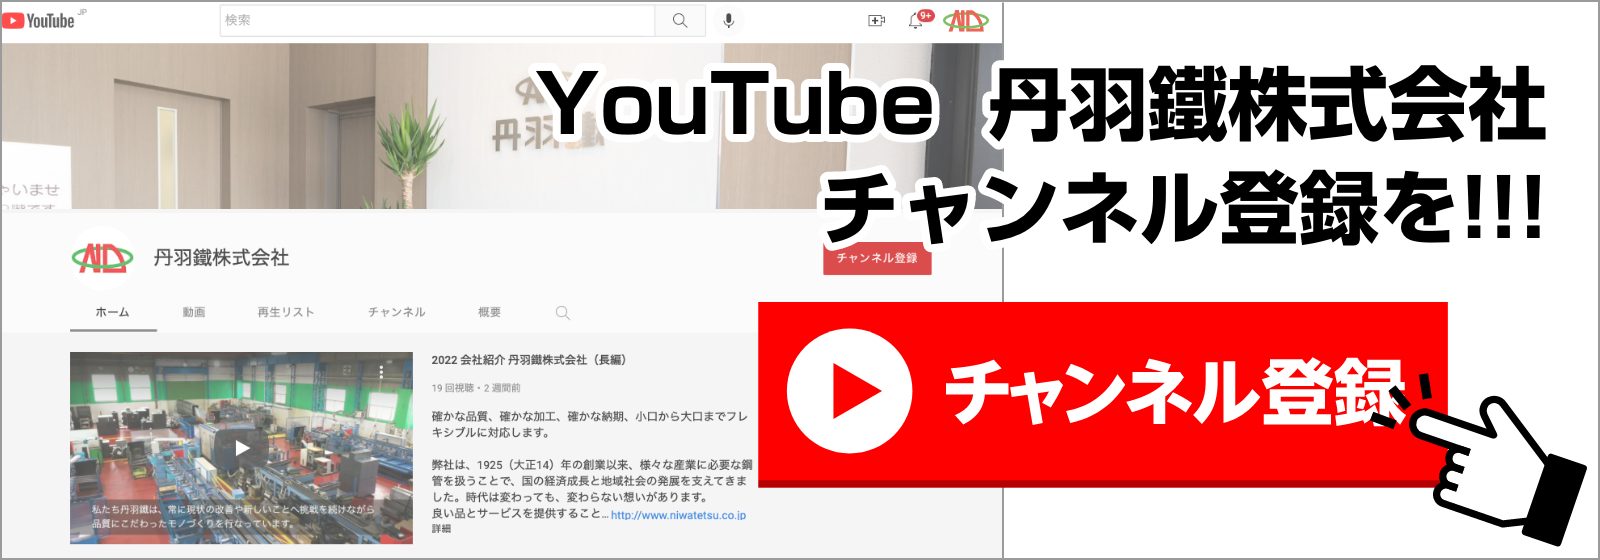 YouTube丹羽鐵株式会社チャンネル